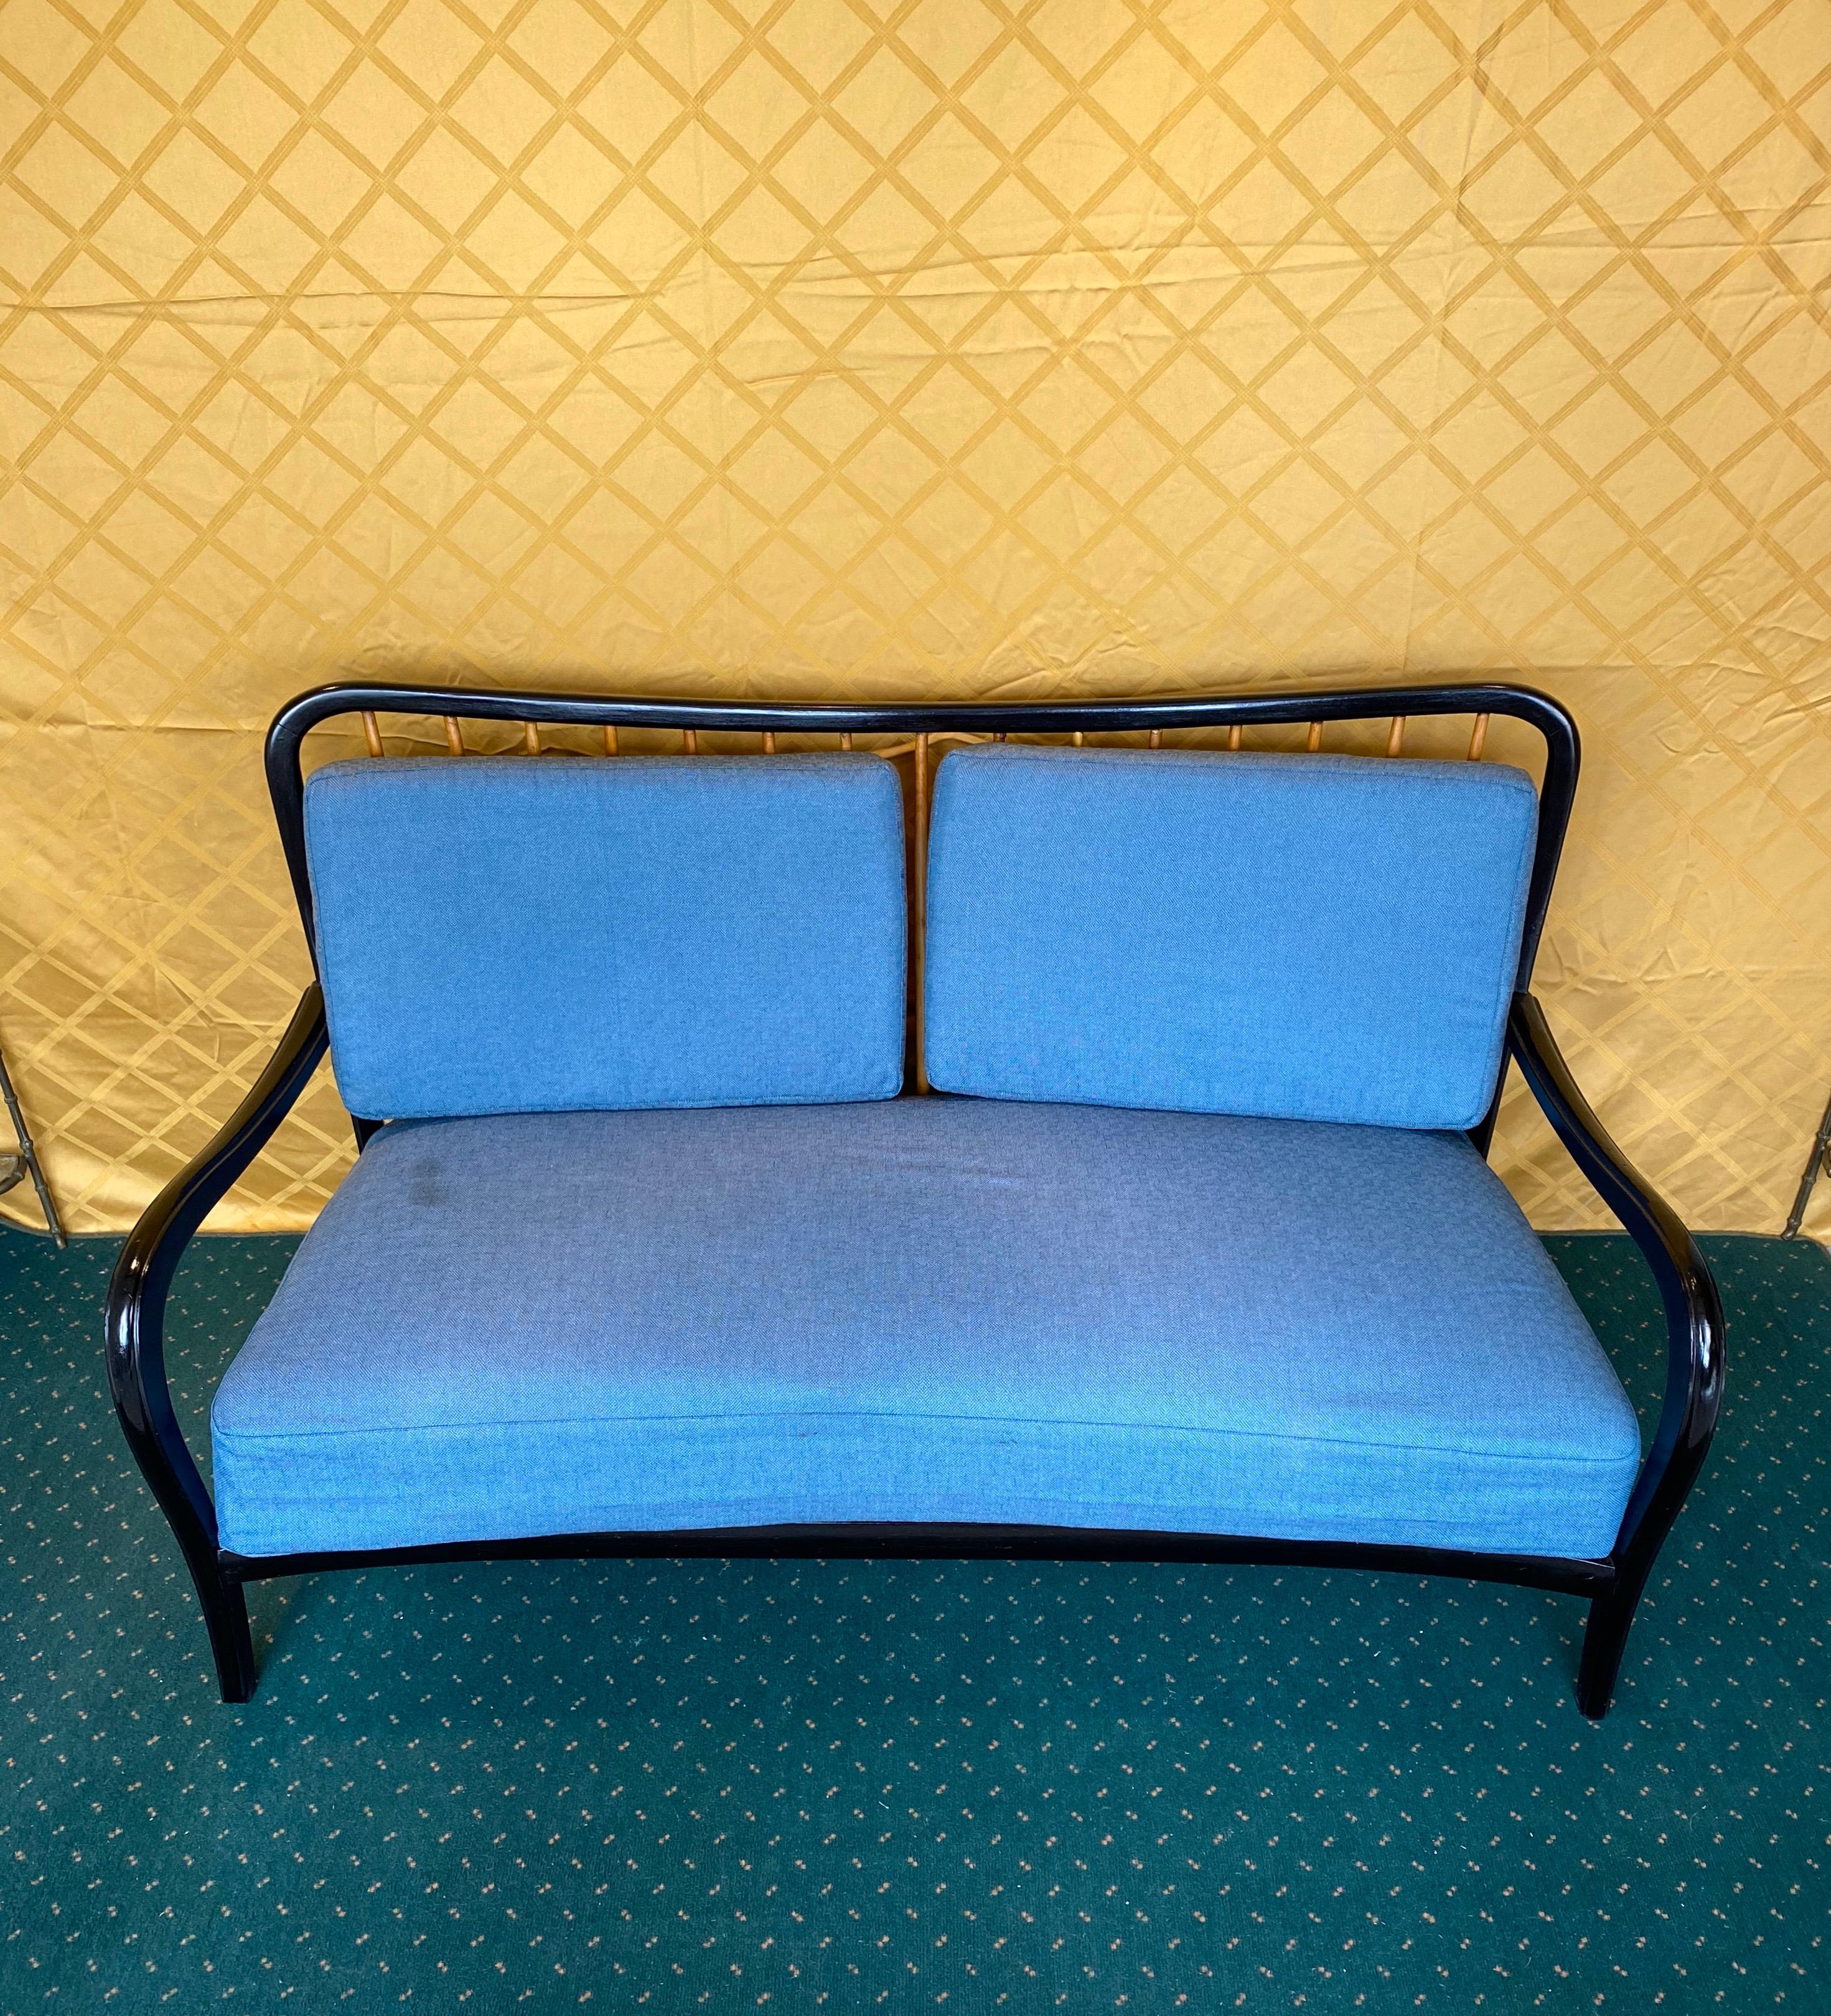 Zweisitzer-Sofa des italienischen Designers Paolo Buffa, mit Holzstruktur und Kissen in Textur. Hergestellt in Italien, um 1950.